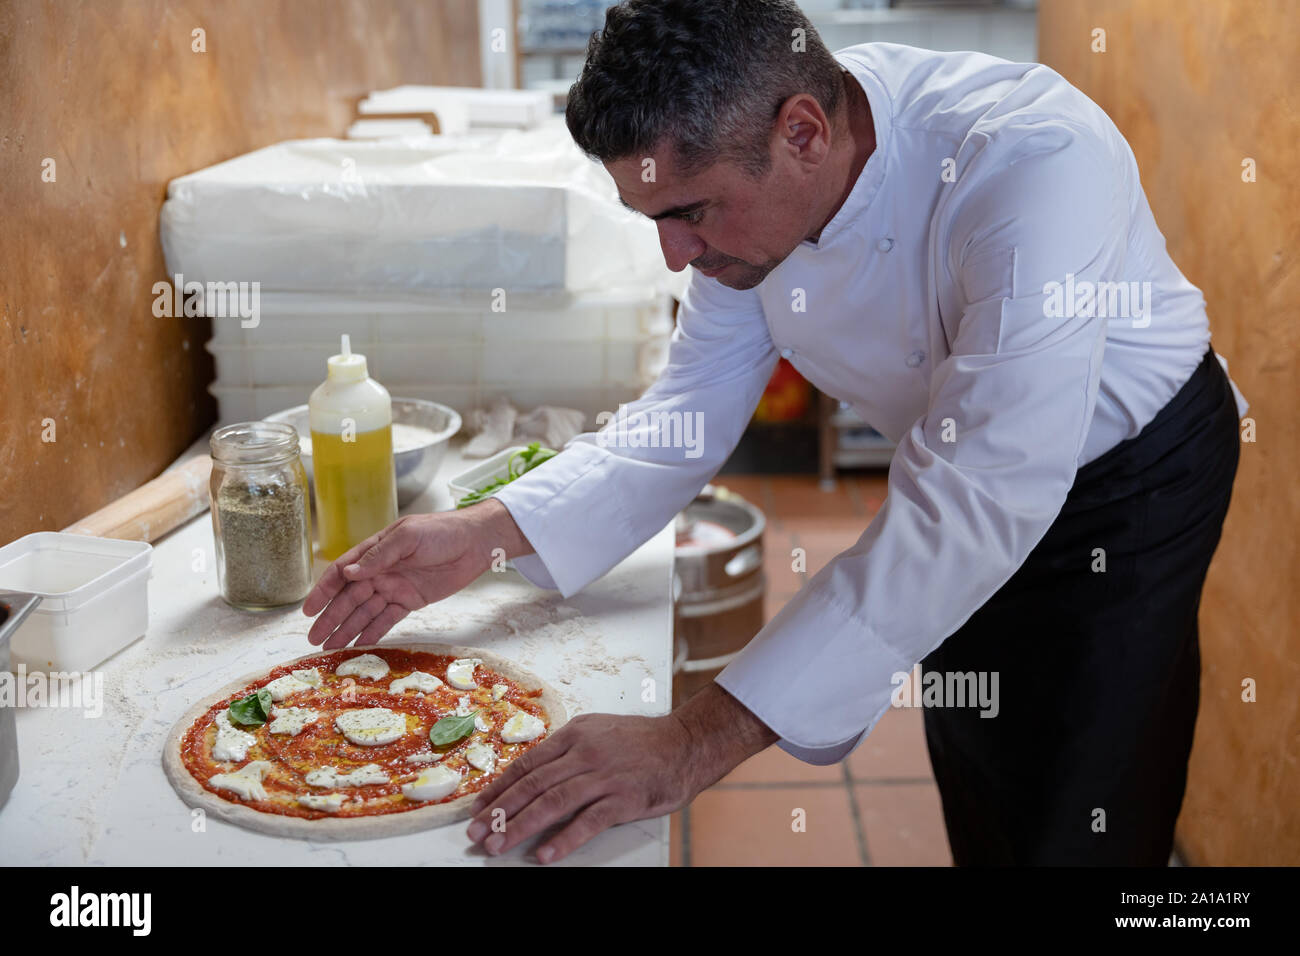 Head chef preparing pizza in a restaurant Stock Photo